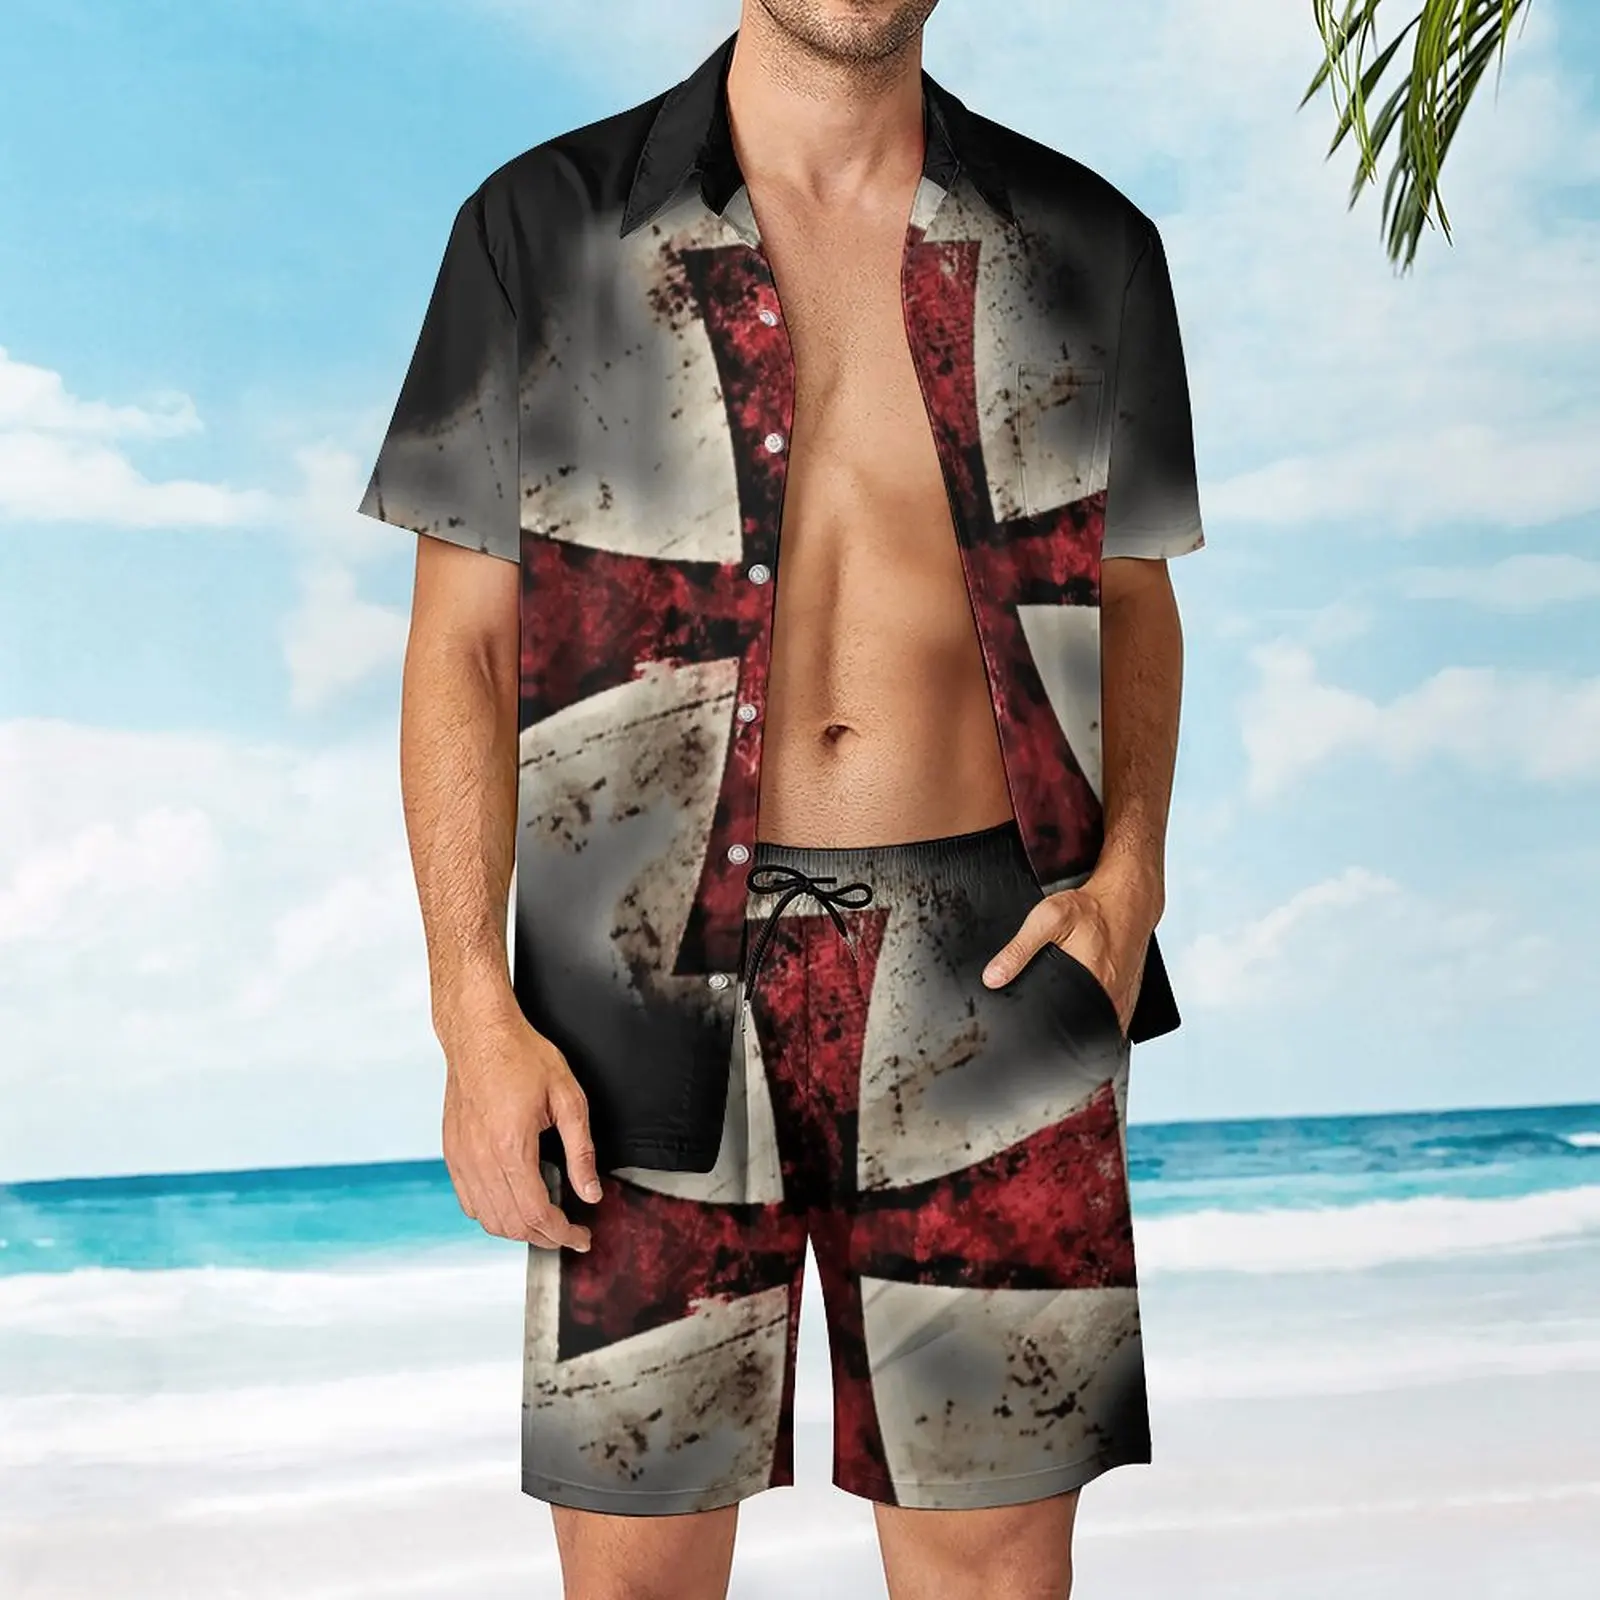 

Templar Cross Men's Beach Suit Unique 2 Pieces Suit High Quality Running USA Size